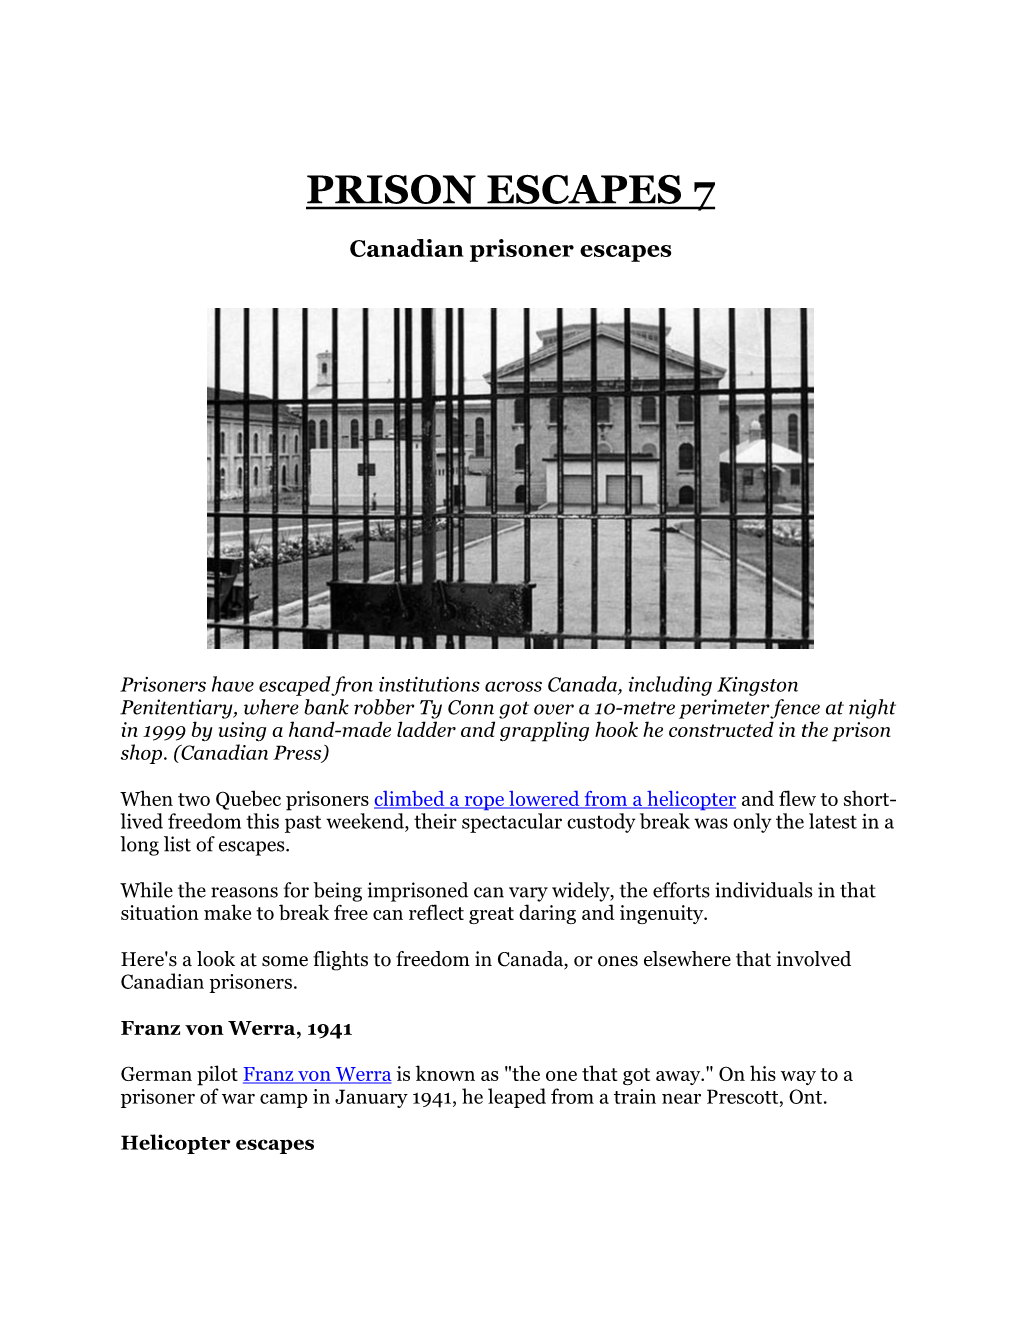 Prison Escapes 7